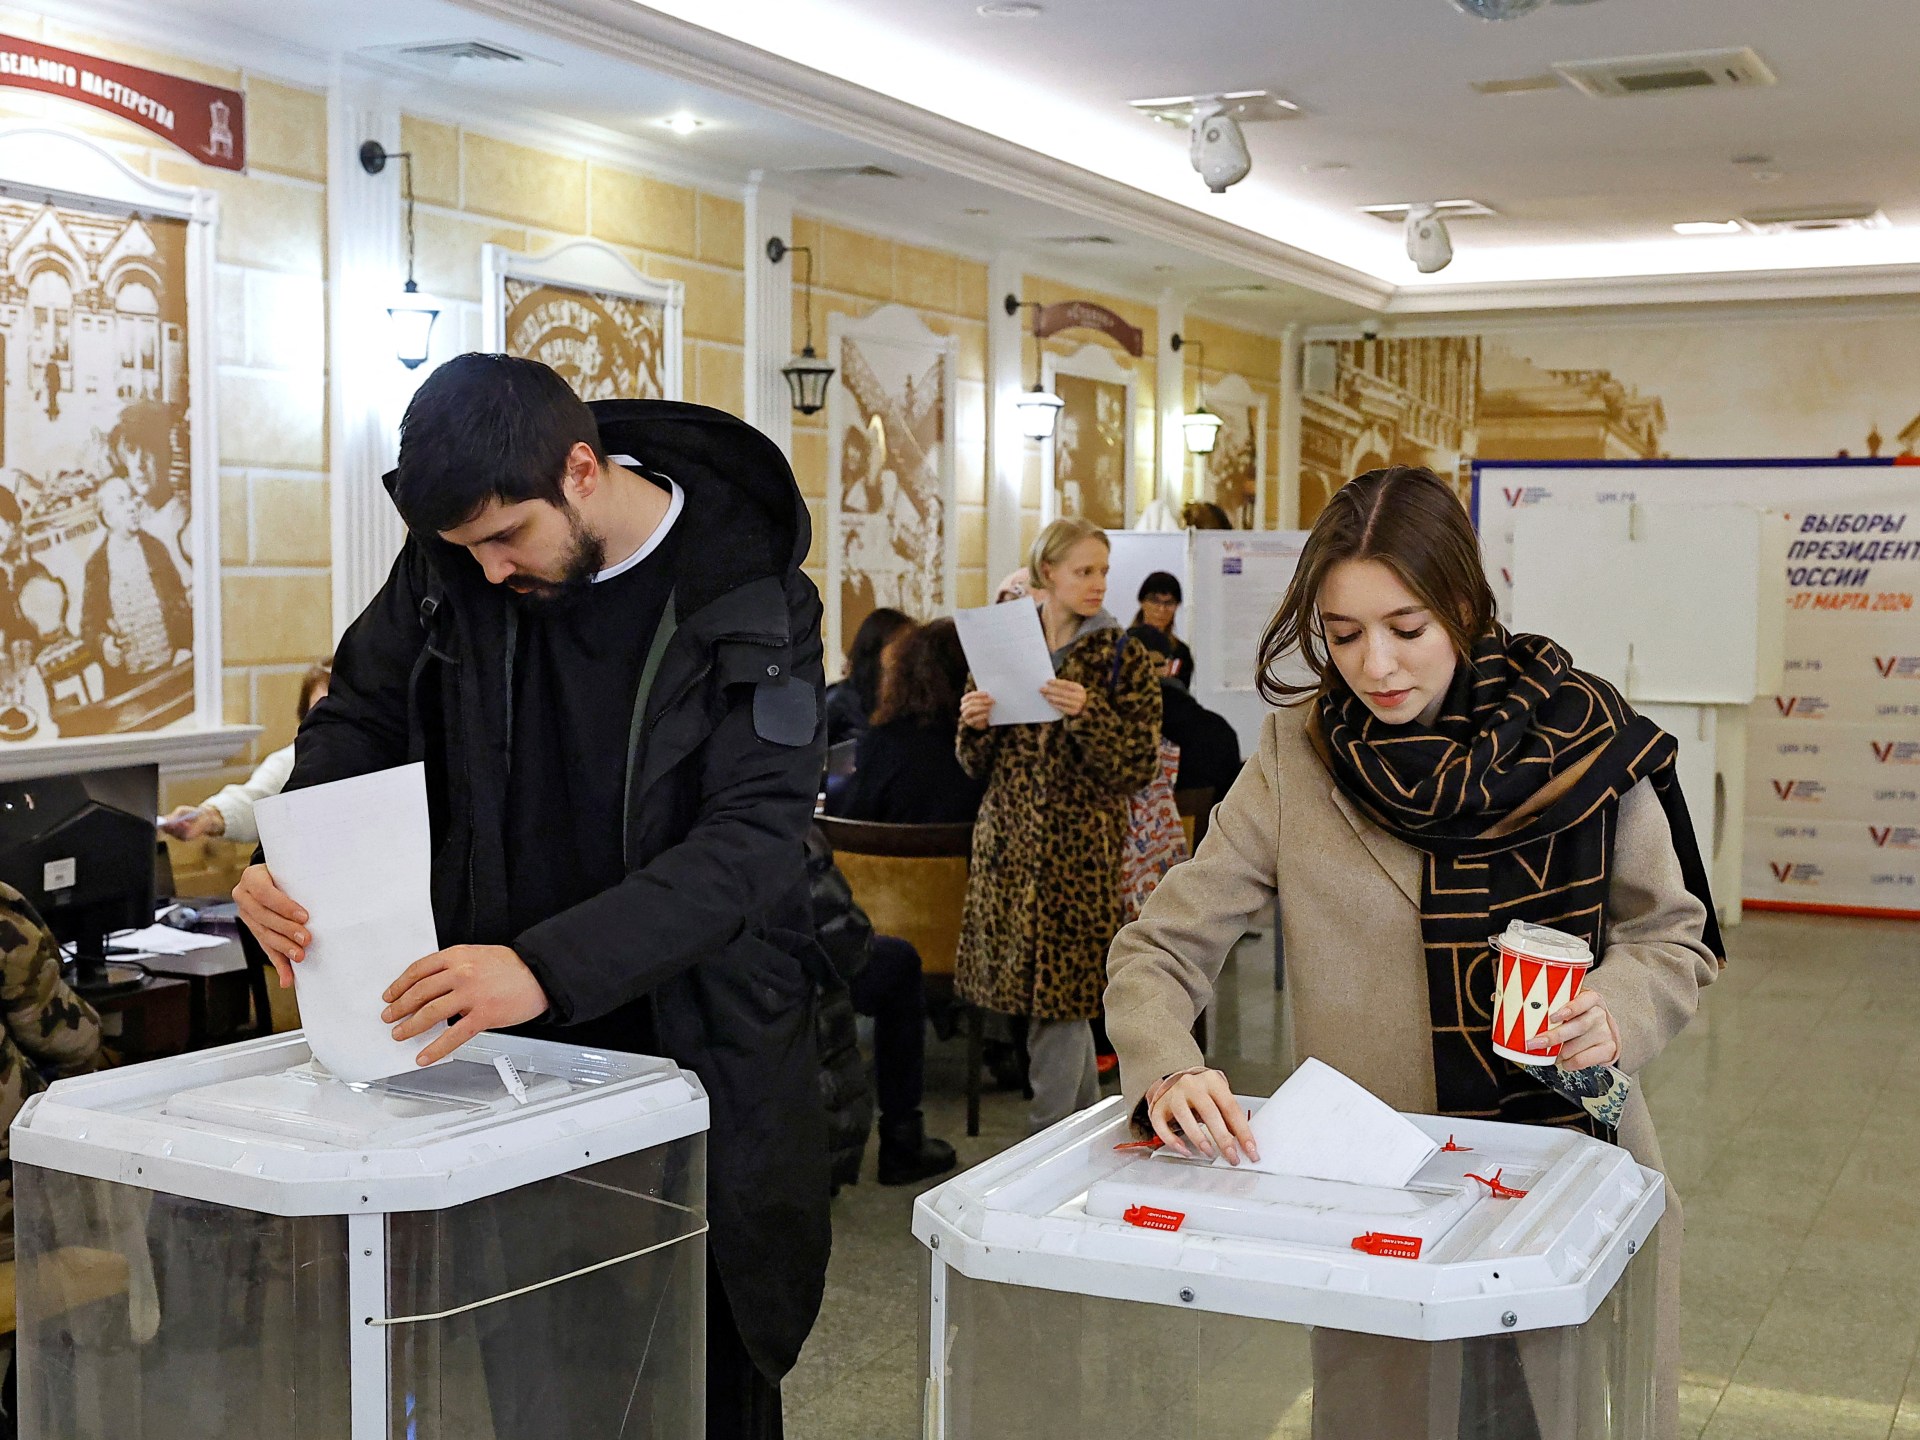 إقبال مرتفع بانتخابات روسيا والمعارضة تحتج | أخبار – البوكس نيوز